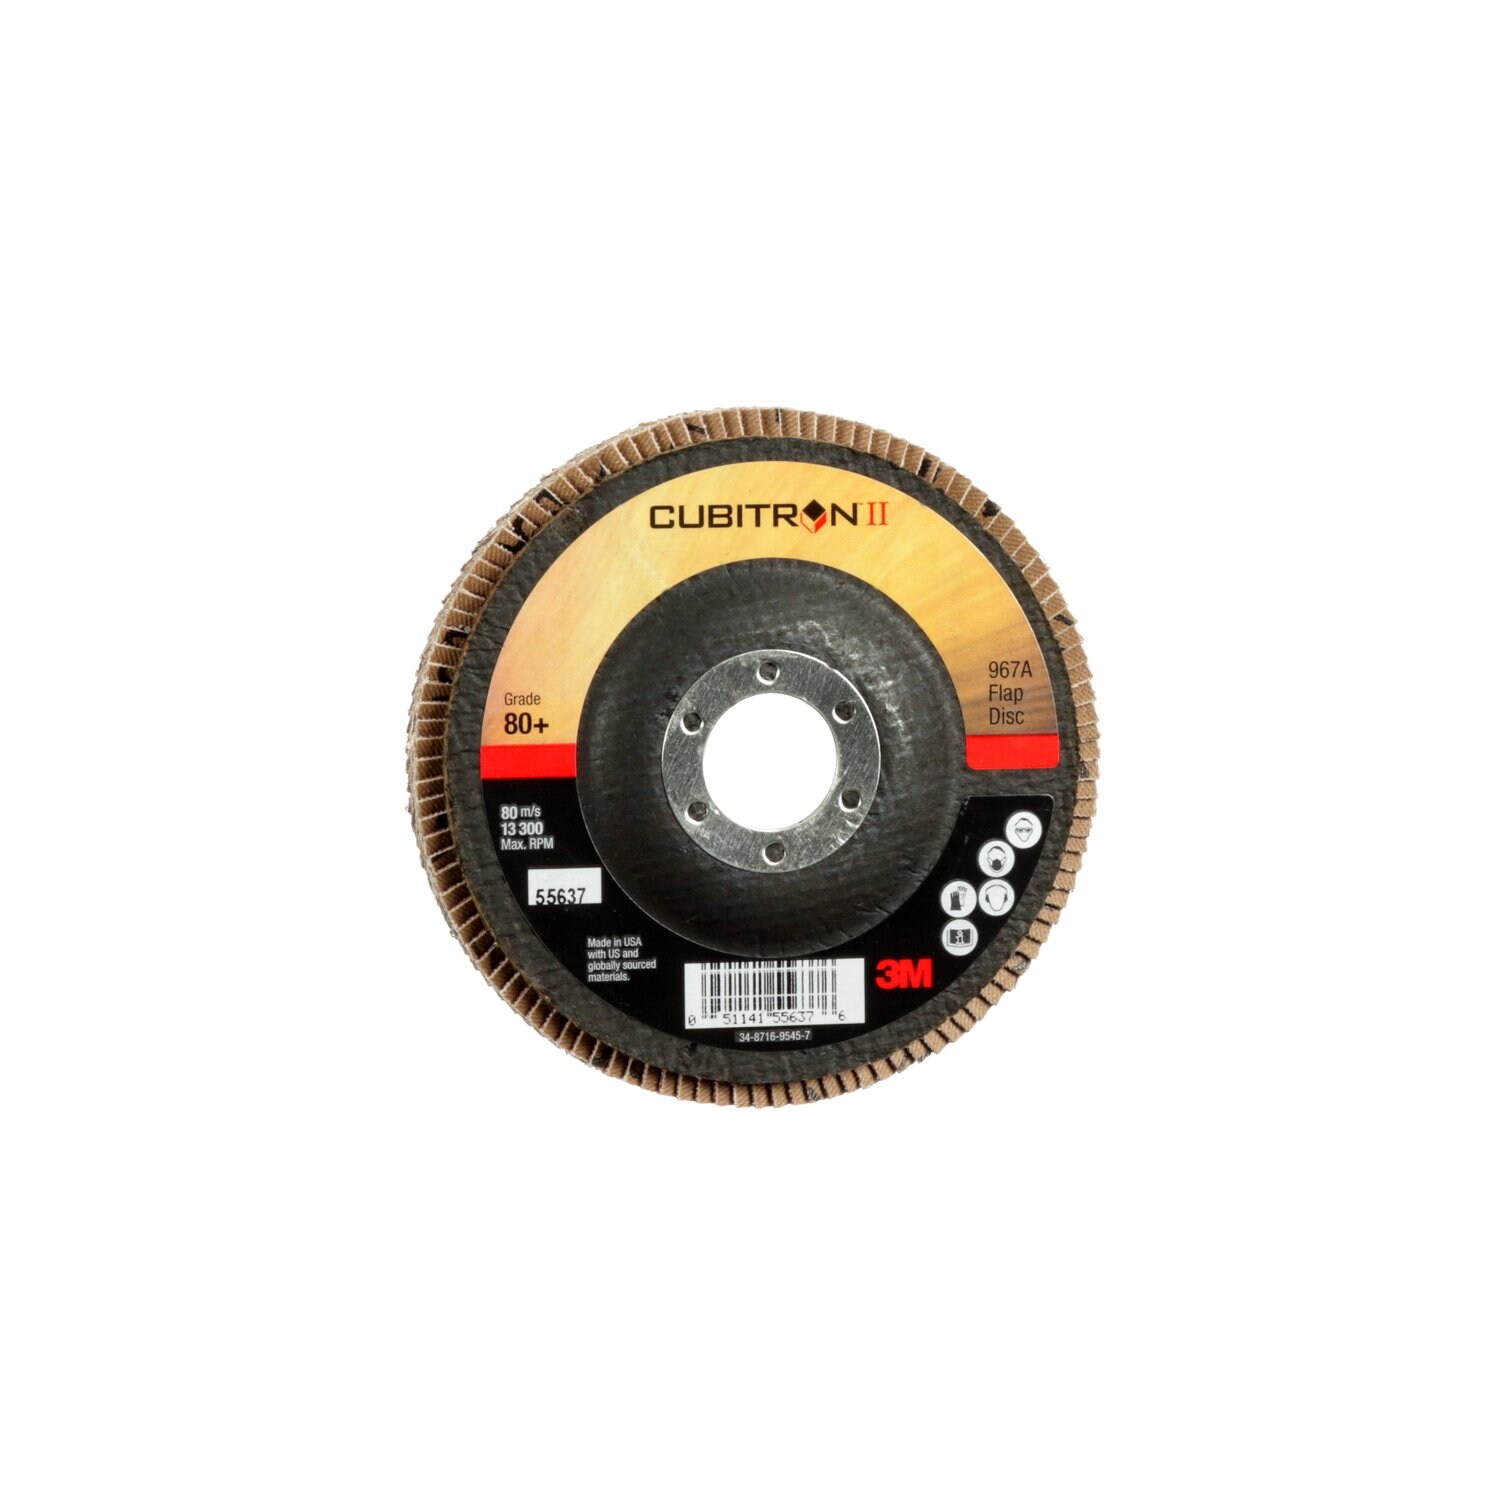 7010363303 - 3M Cubitron II Flap Disc 967A, 80+, T27, 4-1/2 in x 7/8 in, Giant, 10
ea/Case